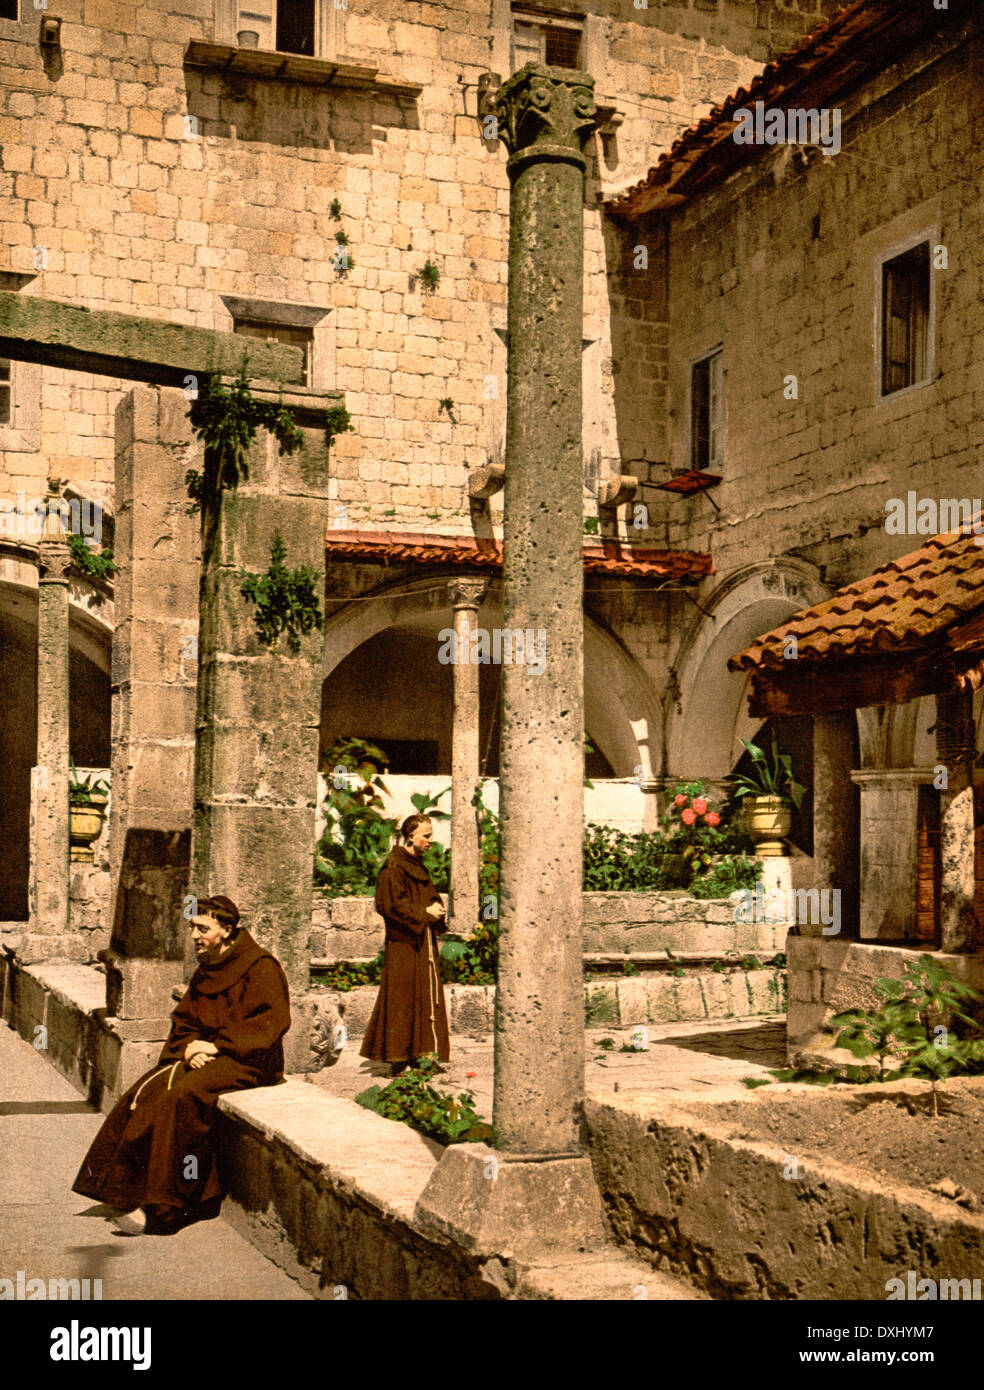 Cortile della farmacia de Franciscani, Ragusa, Sicily, Italy - Courtyard of the Farmacia de Franciscani, Ragusa, Sicily, Italy, circa 1900 Stock Photo